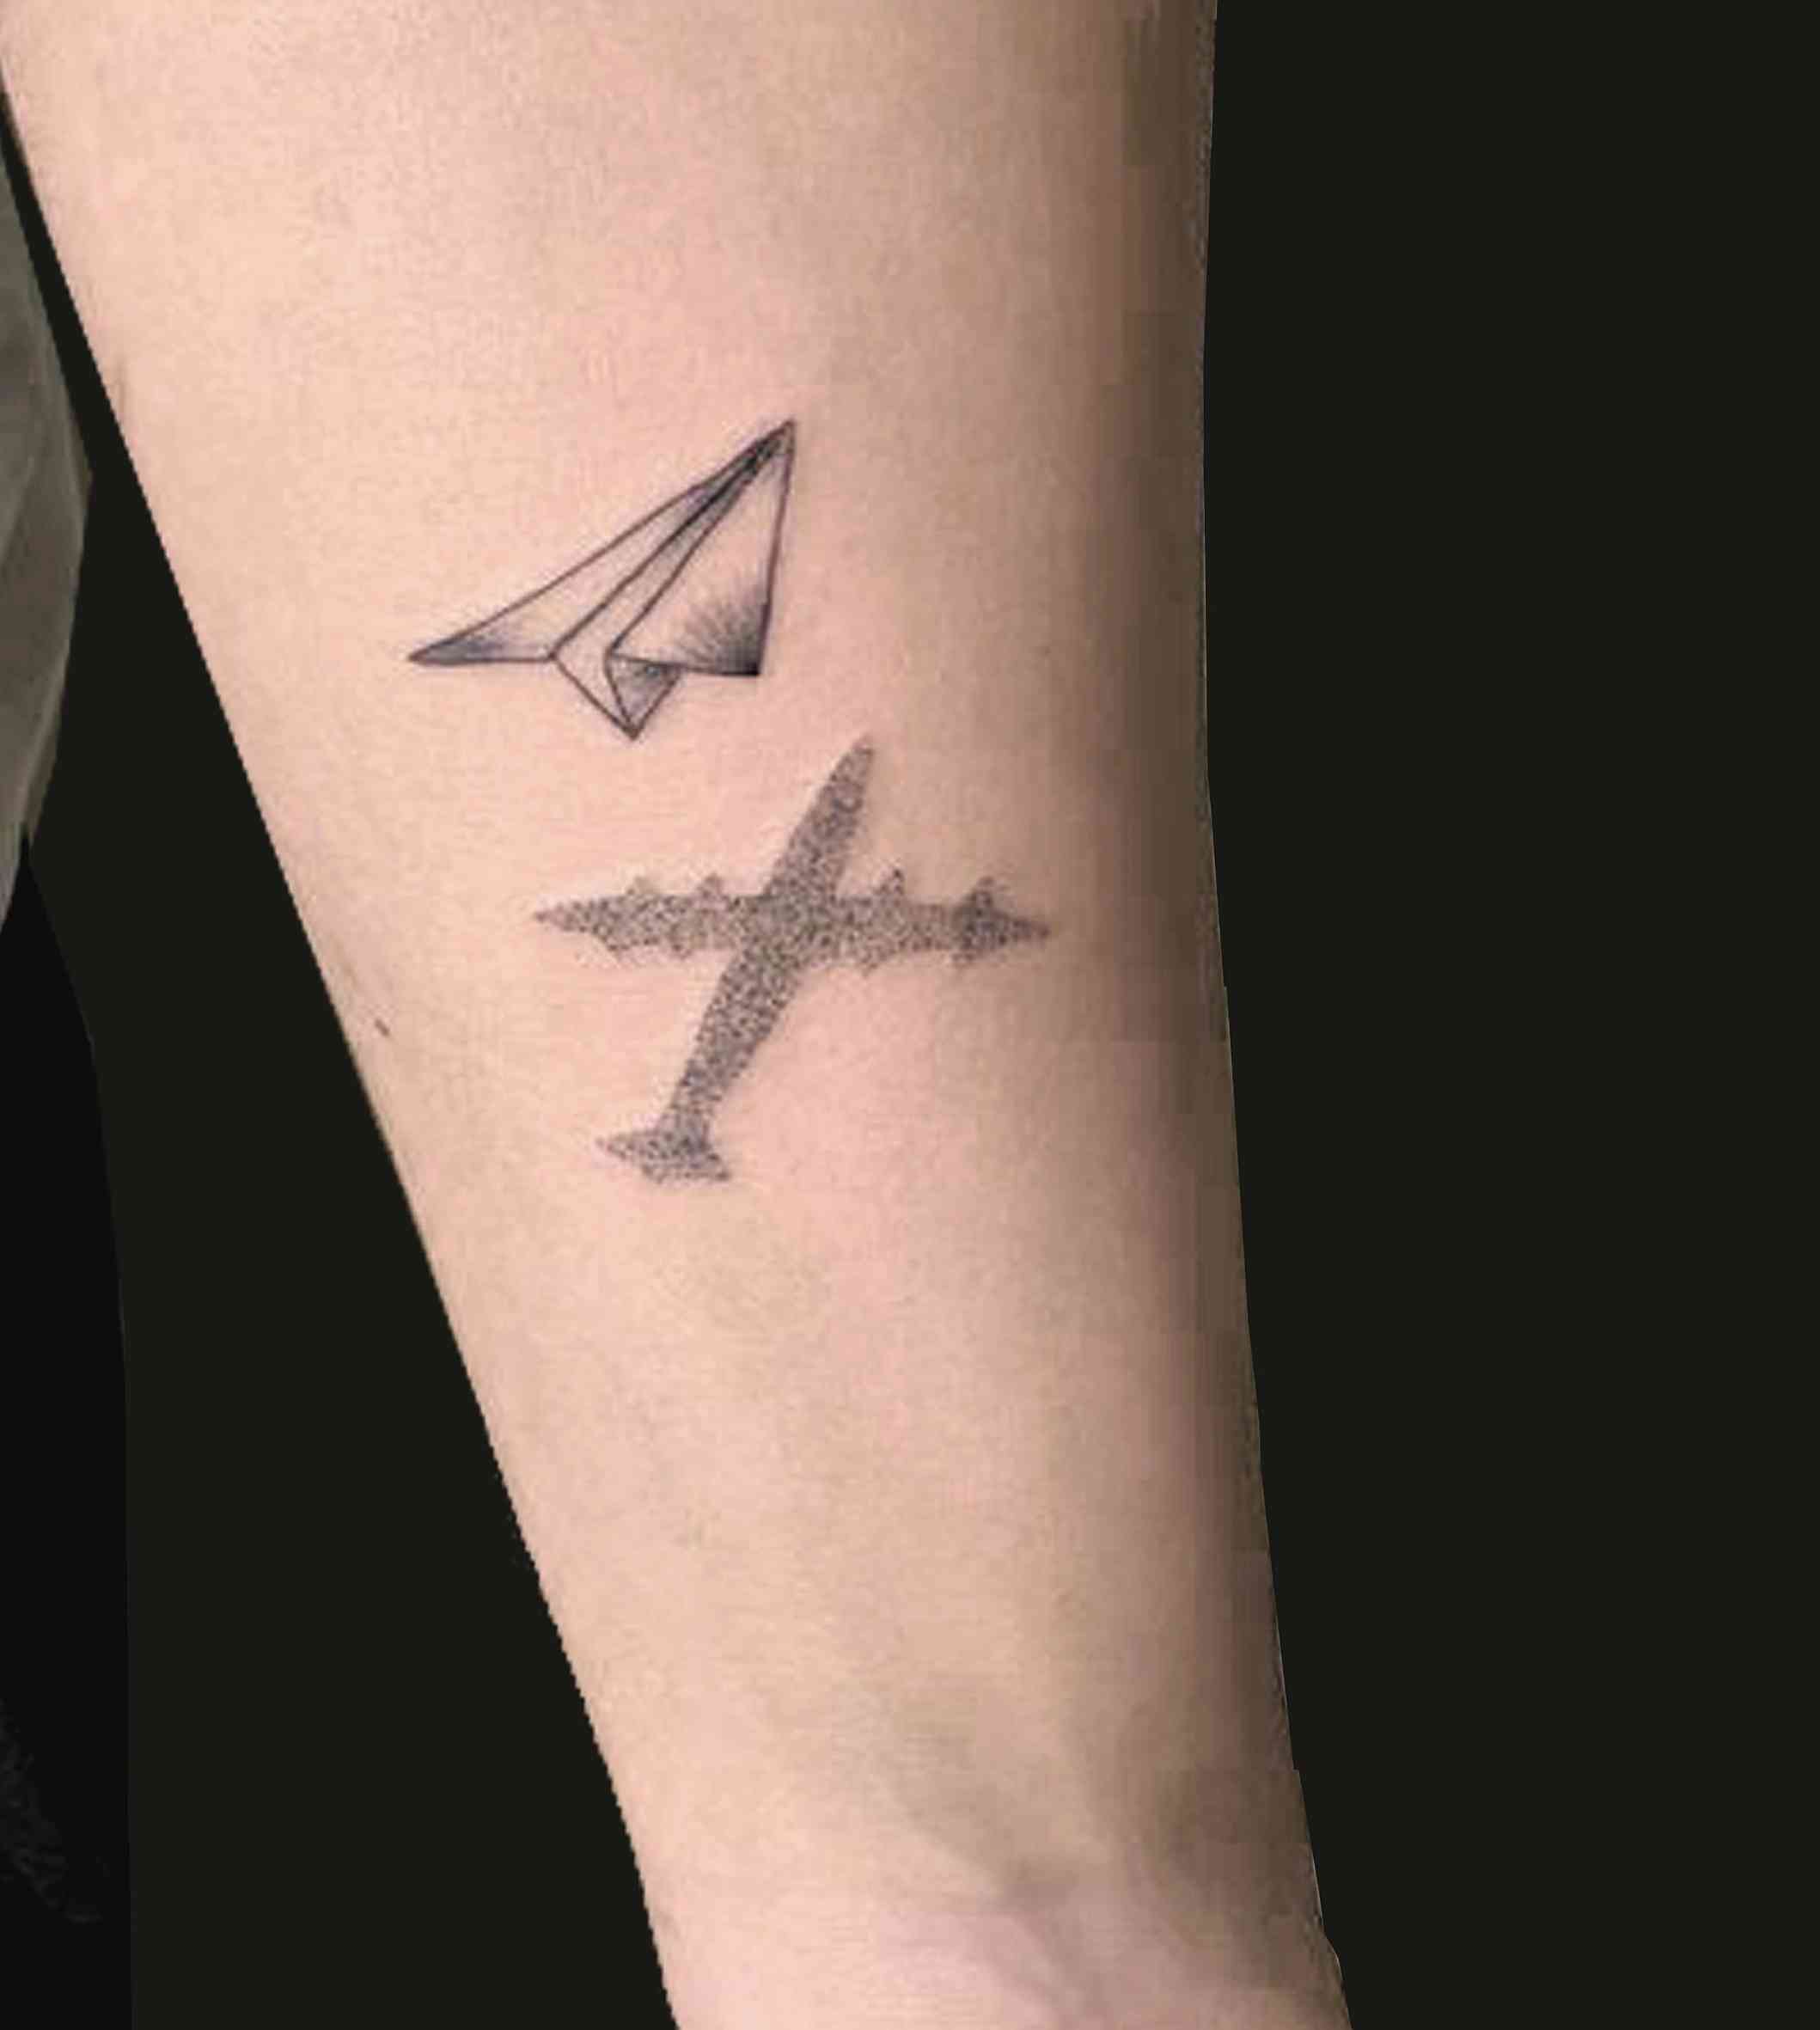 Tattoo tagged with: small, selkansolmaz, airplane, tiny, travel, ifttt,  little, blackwork, wrist, minimalist, illustrative | inked-app.com